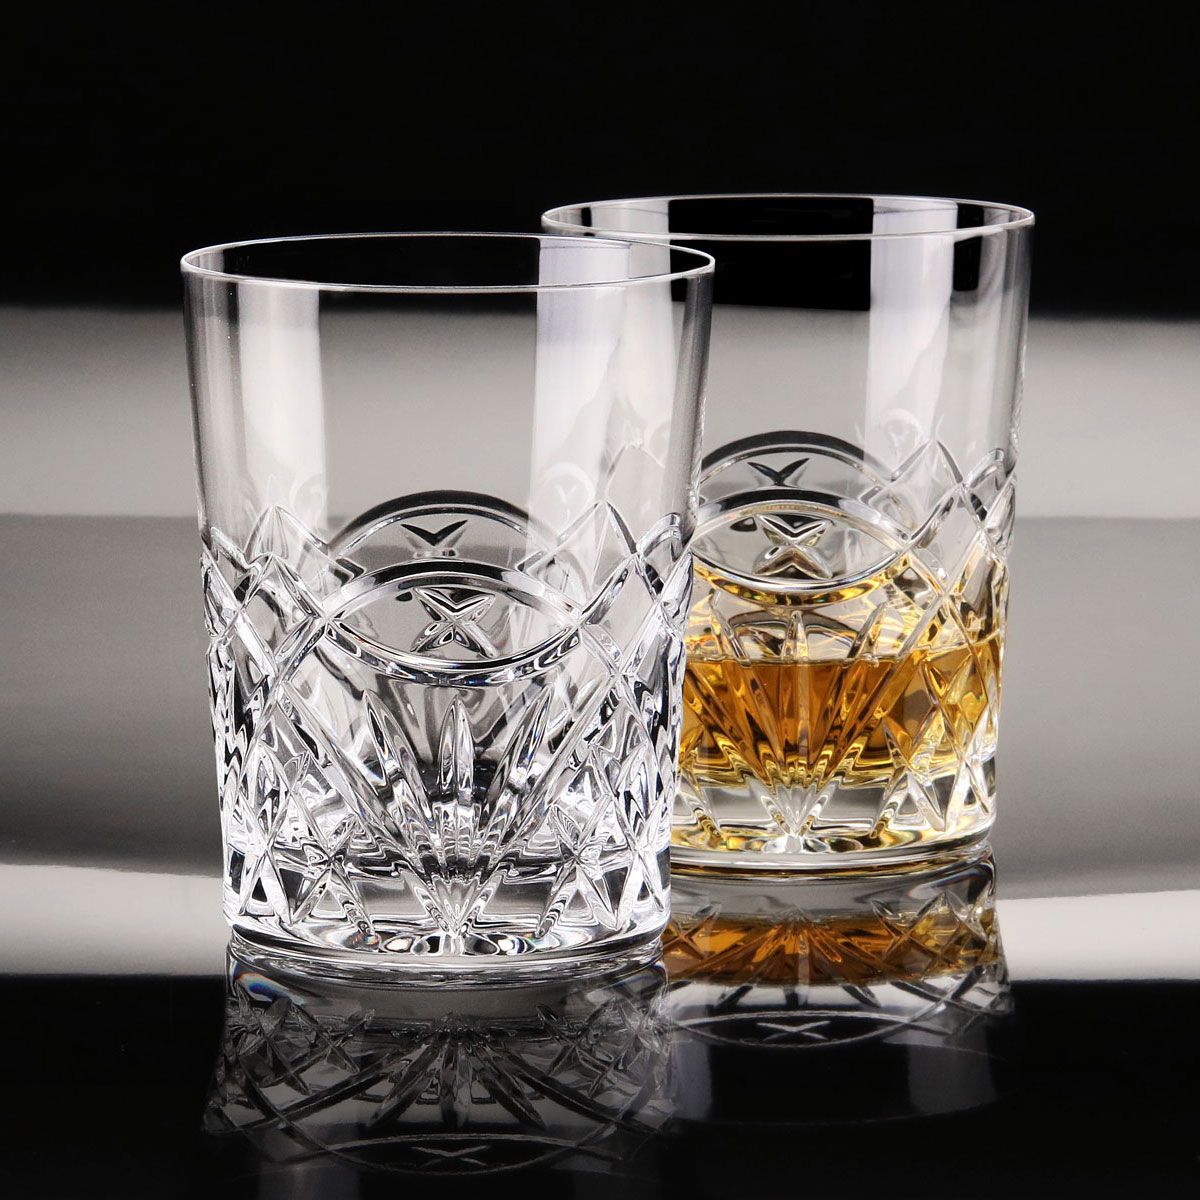 Cashs Ireland, Celtic Ring Crystal DOF Tumbler Single Malt Whiskey Glass, Pair